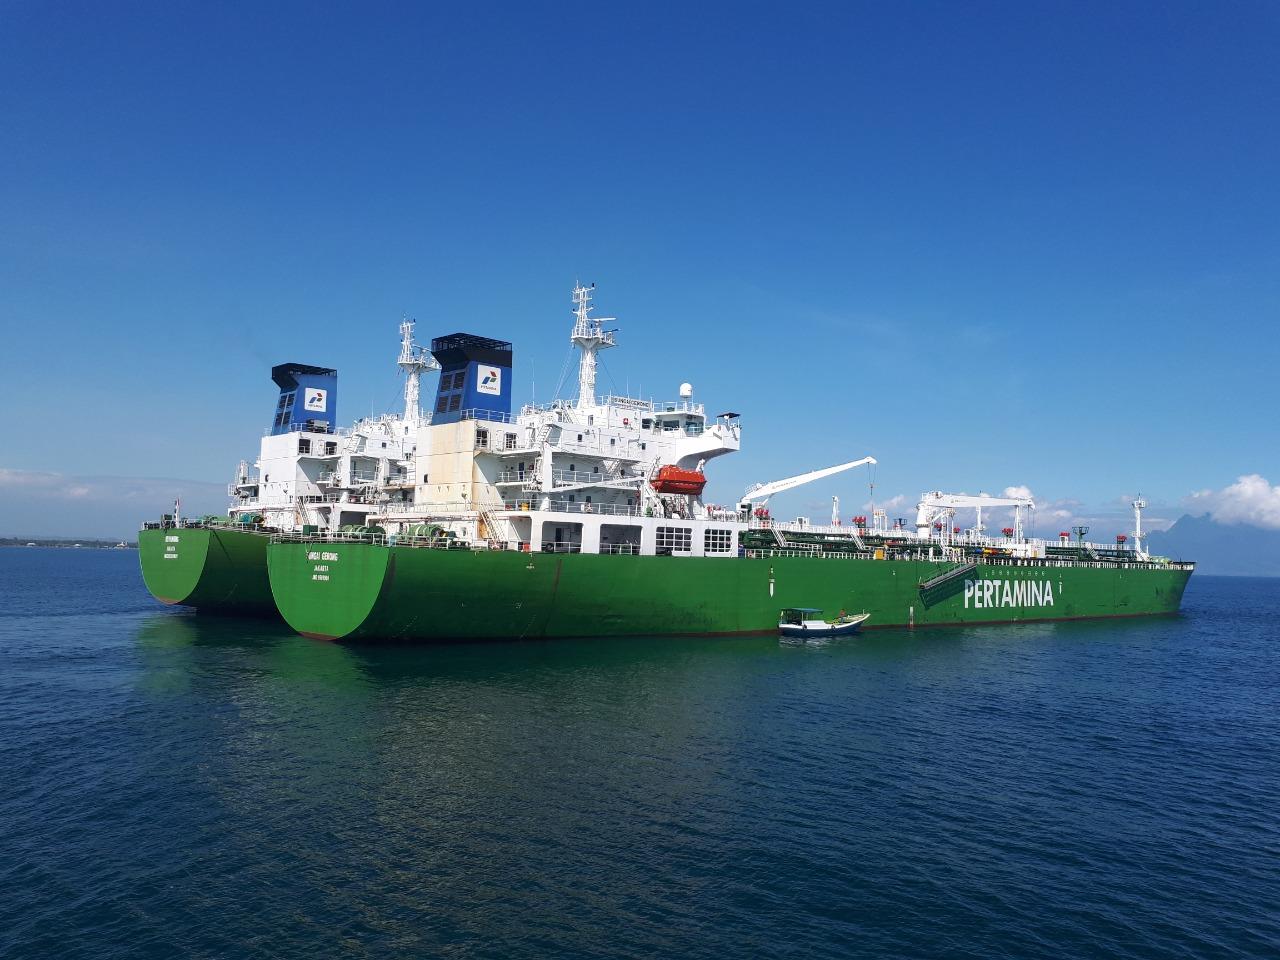 Pertamina International Shipping, bahan bakar minyak, BBM, LPG, sepanjang Ramadan, Ramadhan, Idul Fitri, Idulfitri, Pertamina, Roberth MV Dumatubun